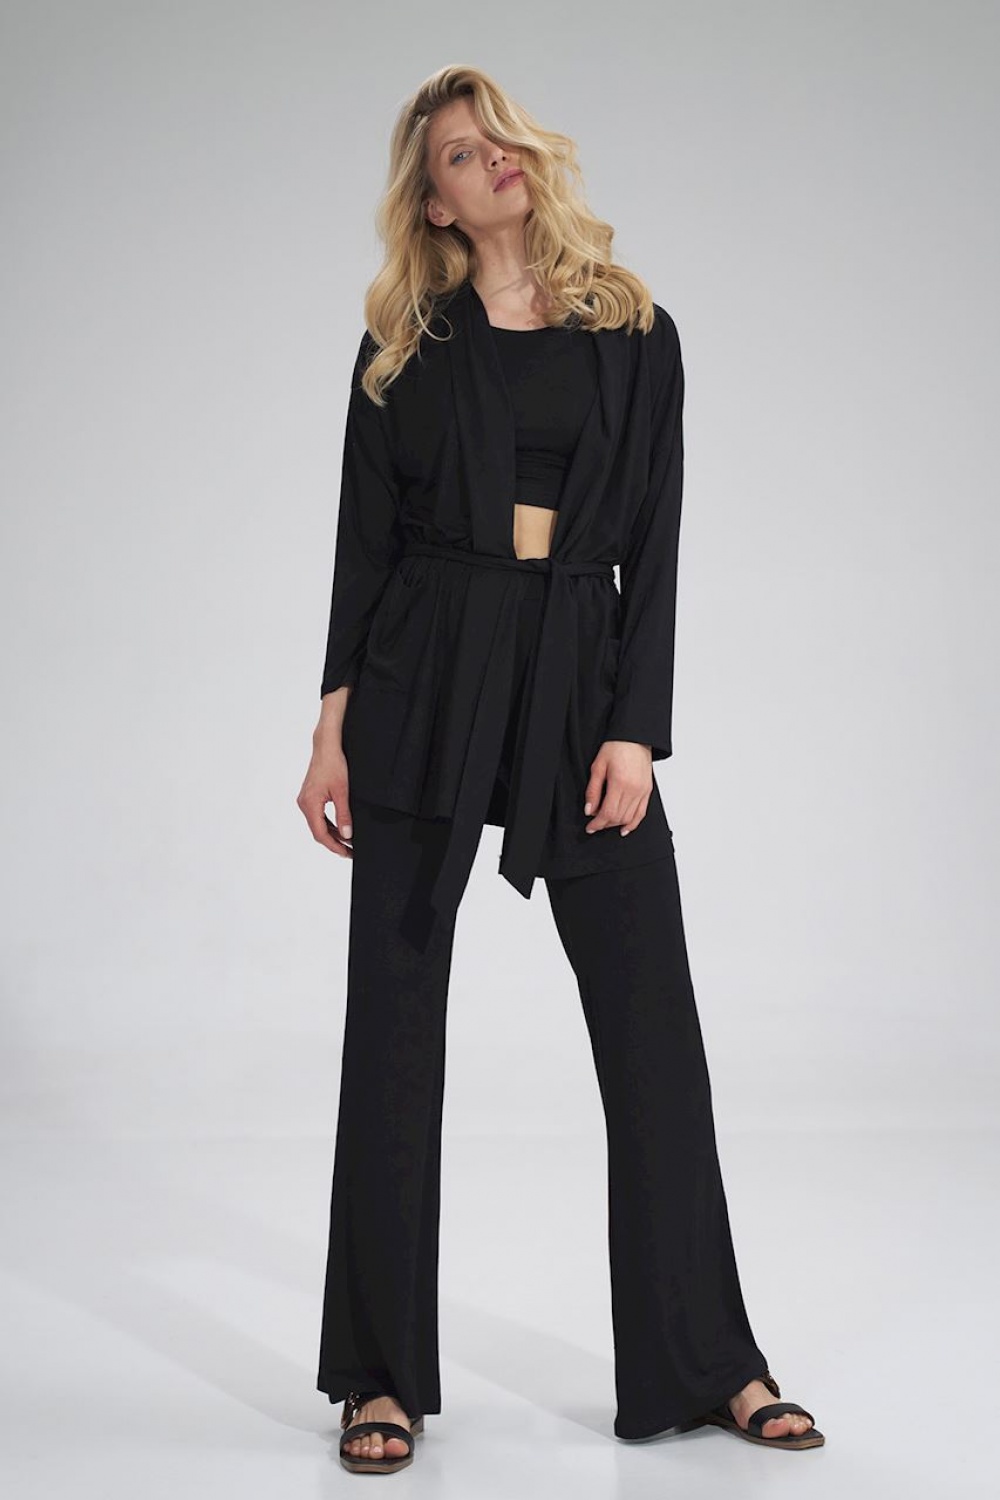  Women trousers model 154714 Figl  black